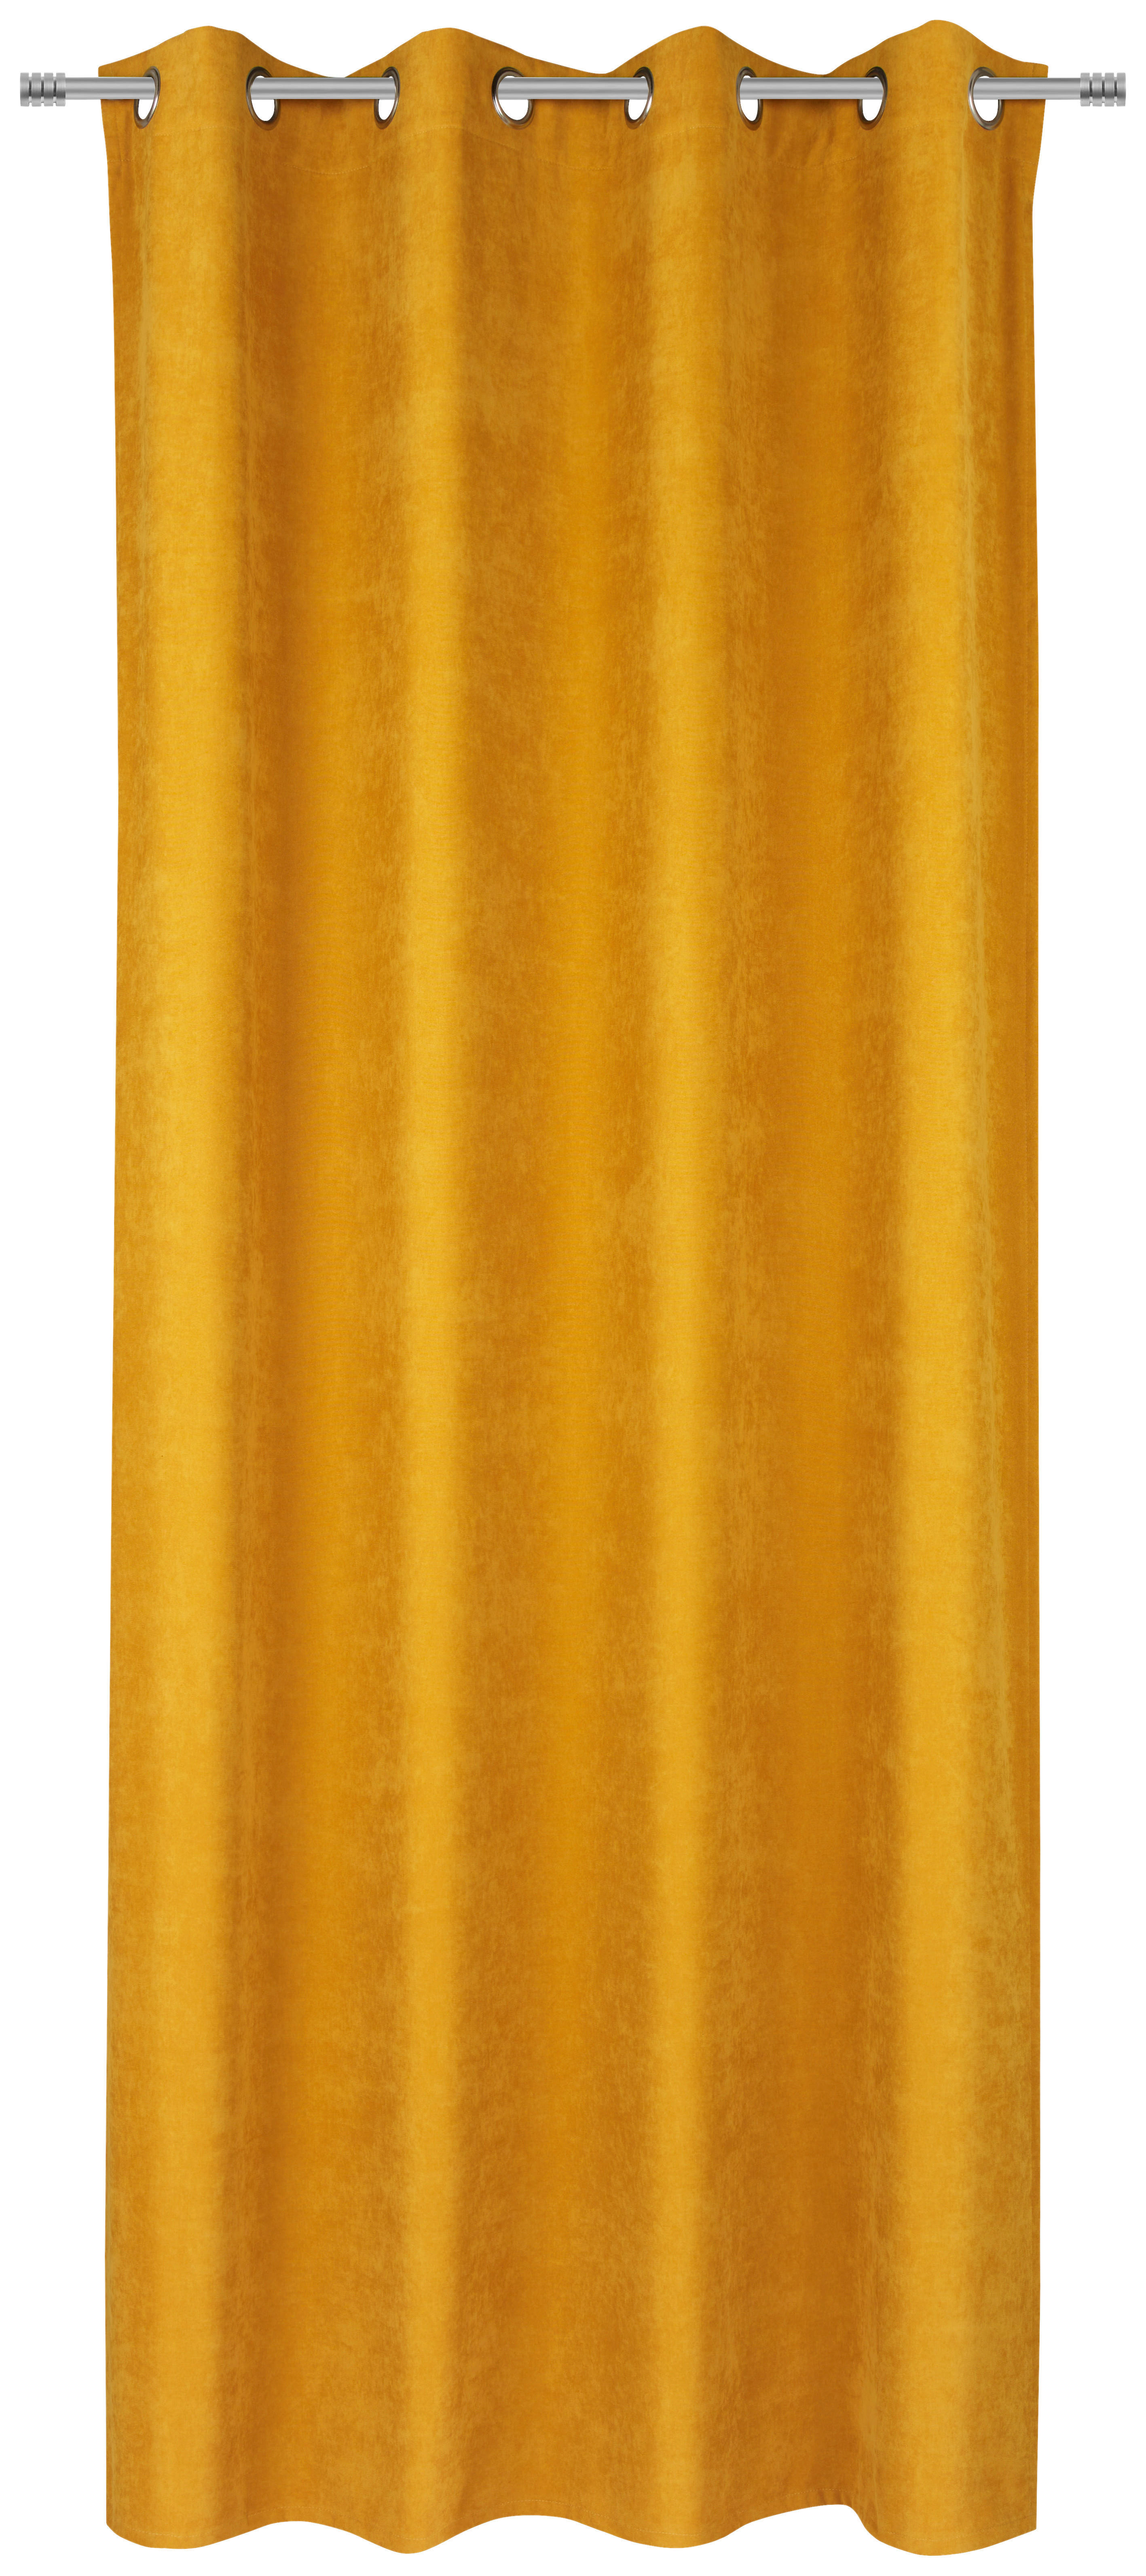 ZAVJESA S RINGOVIMA žuta - žuta, Konvencionalno, tekstil (140/245cm) - Esposa